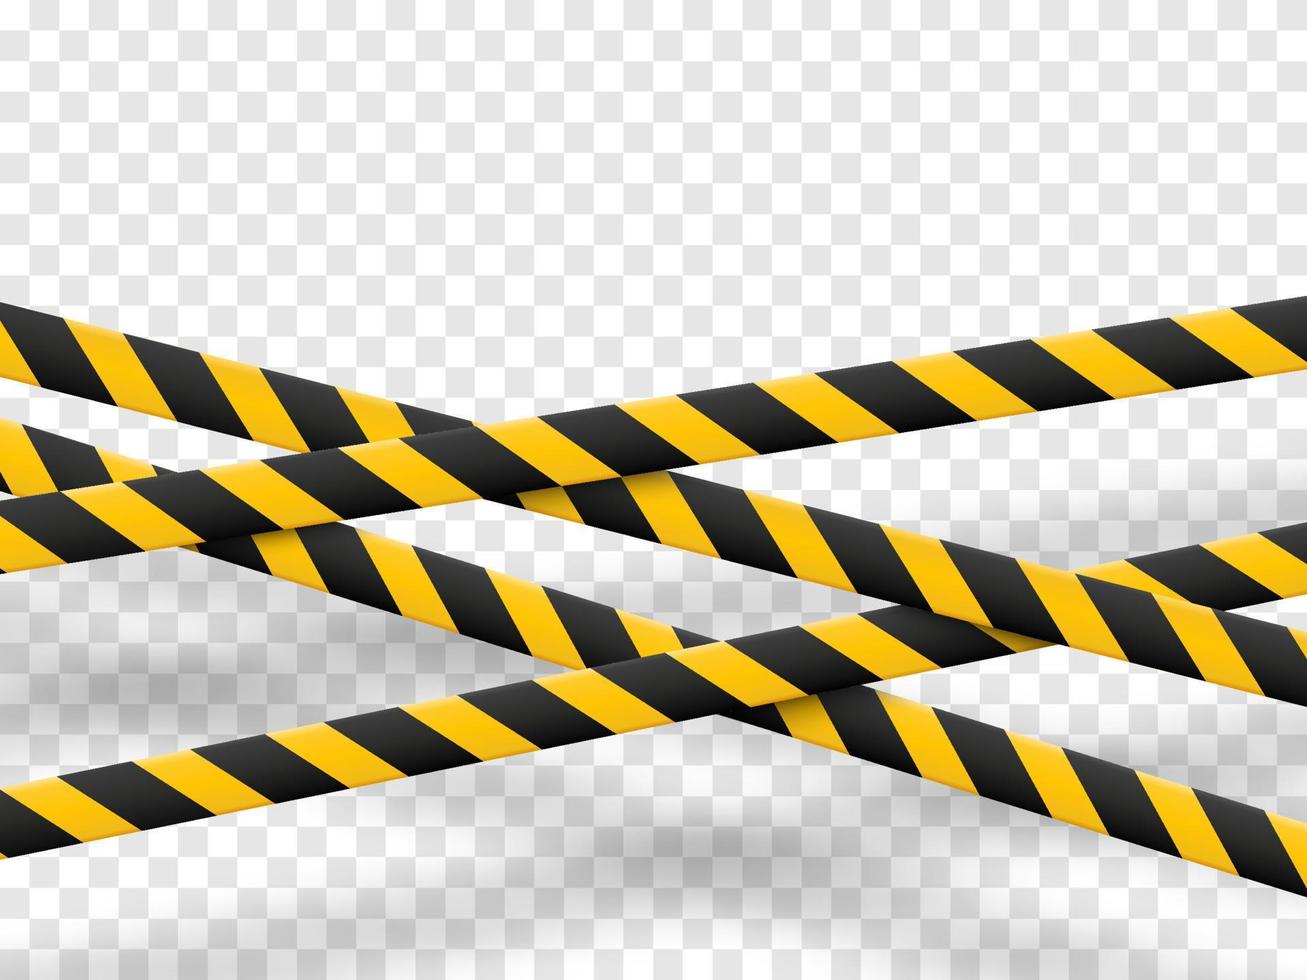 bande de mise en garde. attention lignes d'avertissement jaunes isolées sur blanc. vecteur